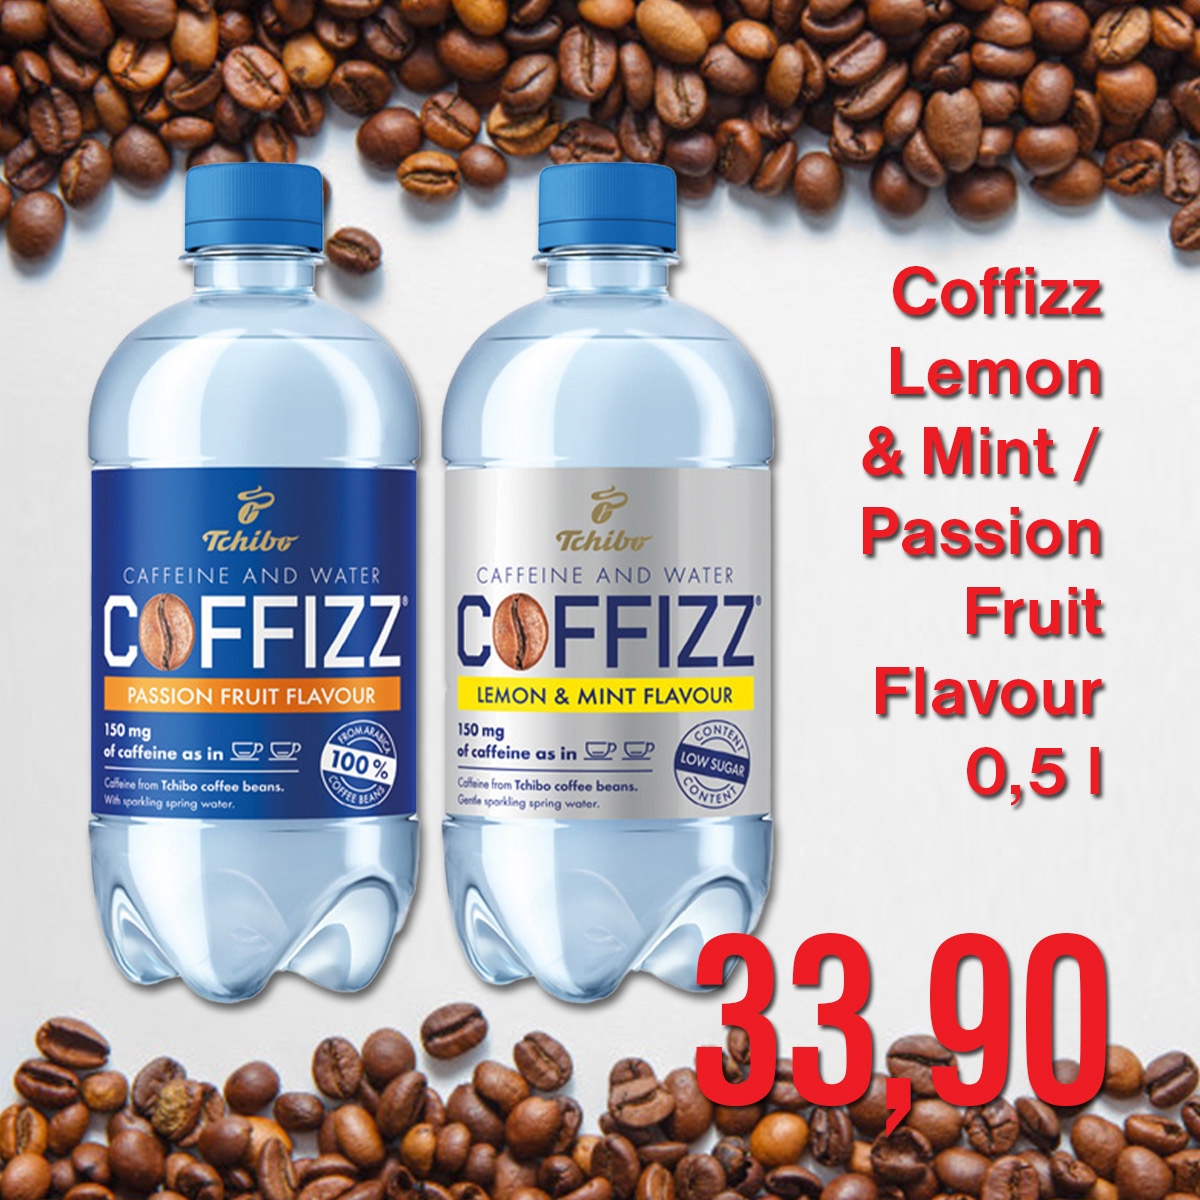 Coffizz Lemon & Mint / Passion Fruit Flavour 0,5 l